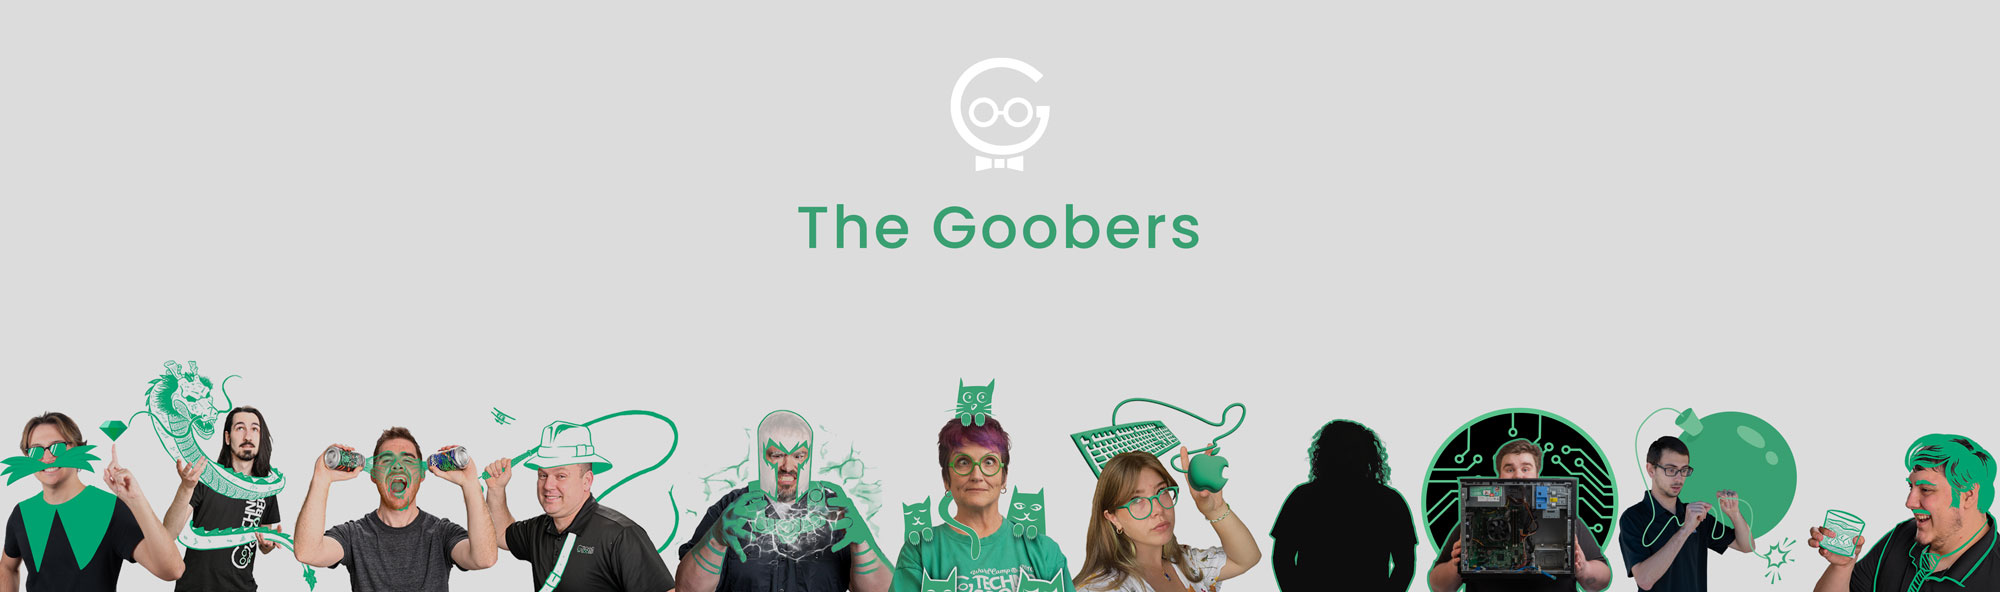 Goobers-Banner-copy2